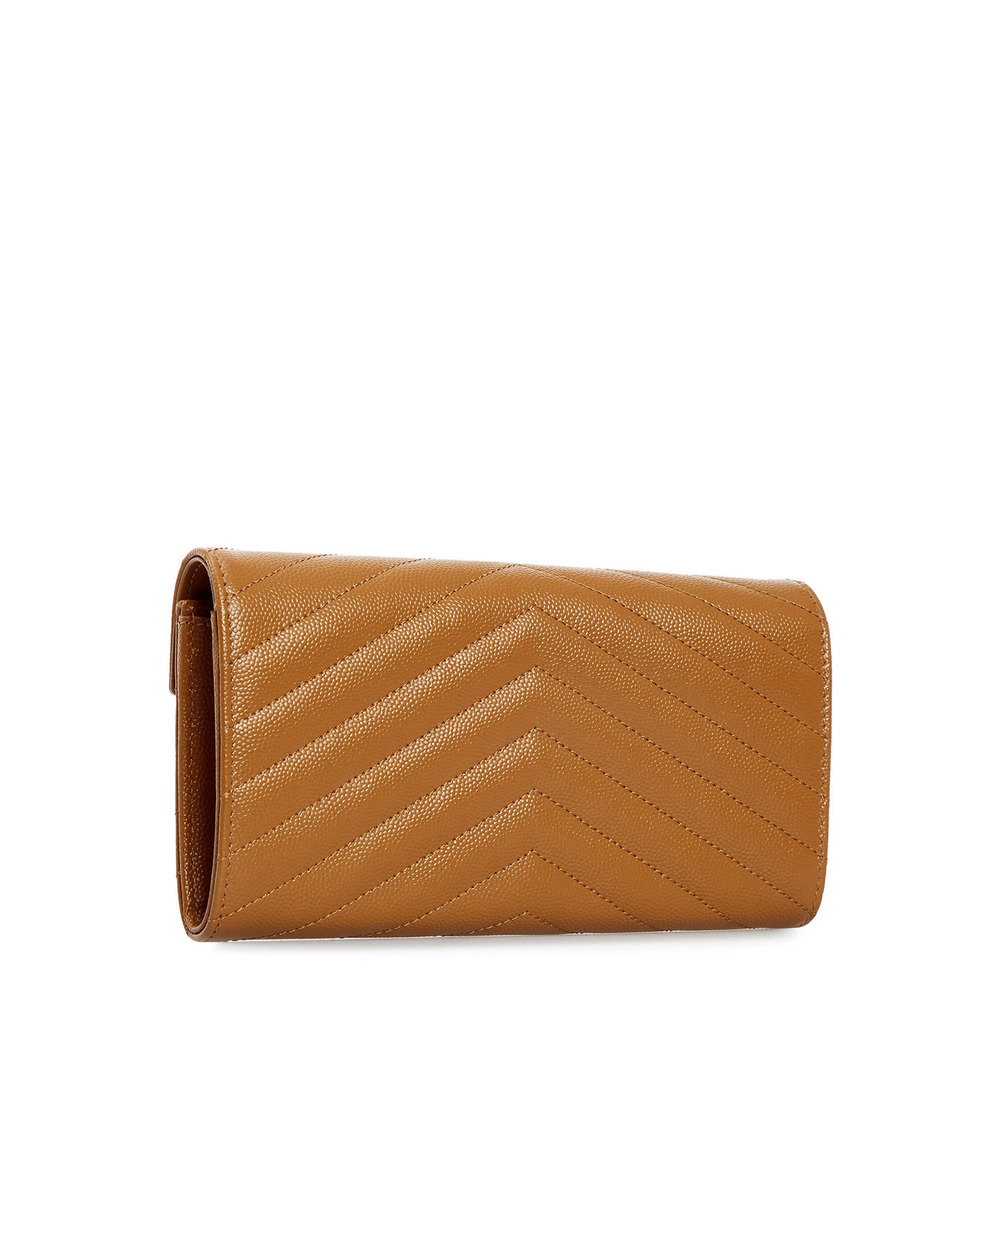 Кожаный кошелек Monogram Saint Laurent 372264-BOW01-, коричневый цвет • Купить в интернет-магазине Kameron